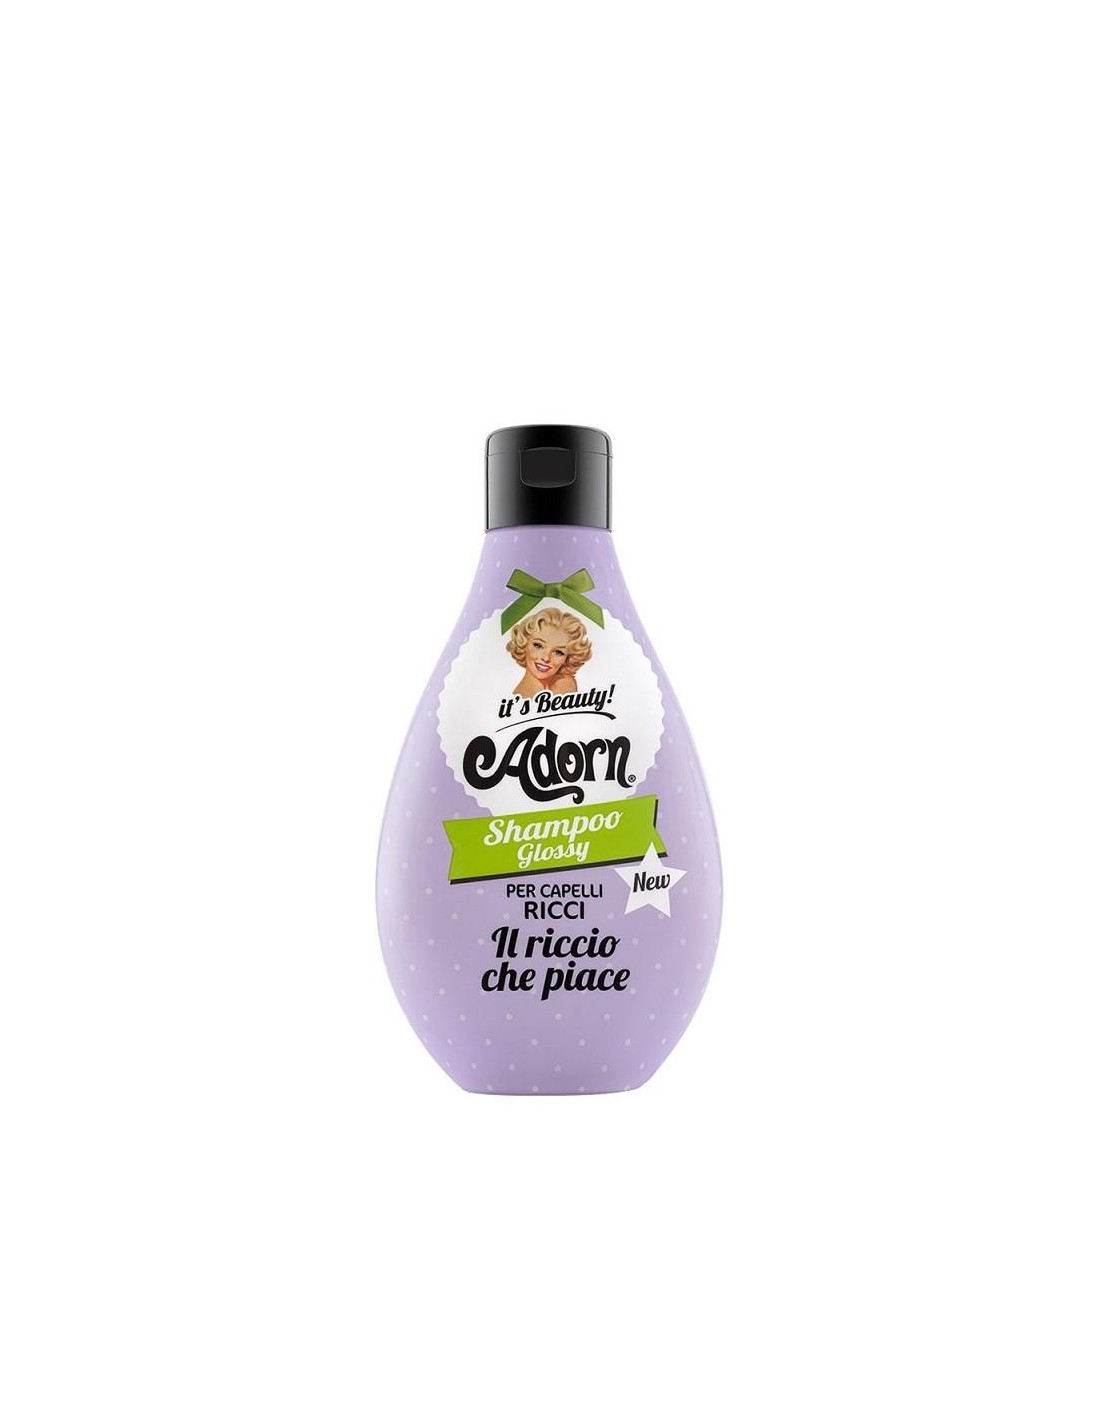 Adorn Shampoo Glossy Per Capelli Ricci 250 Ml